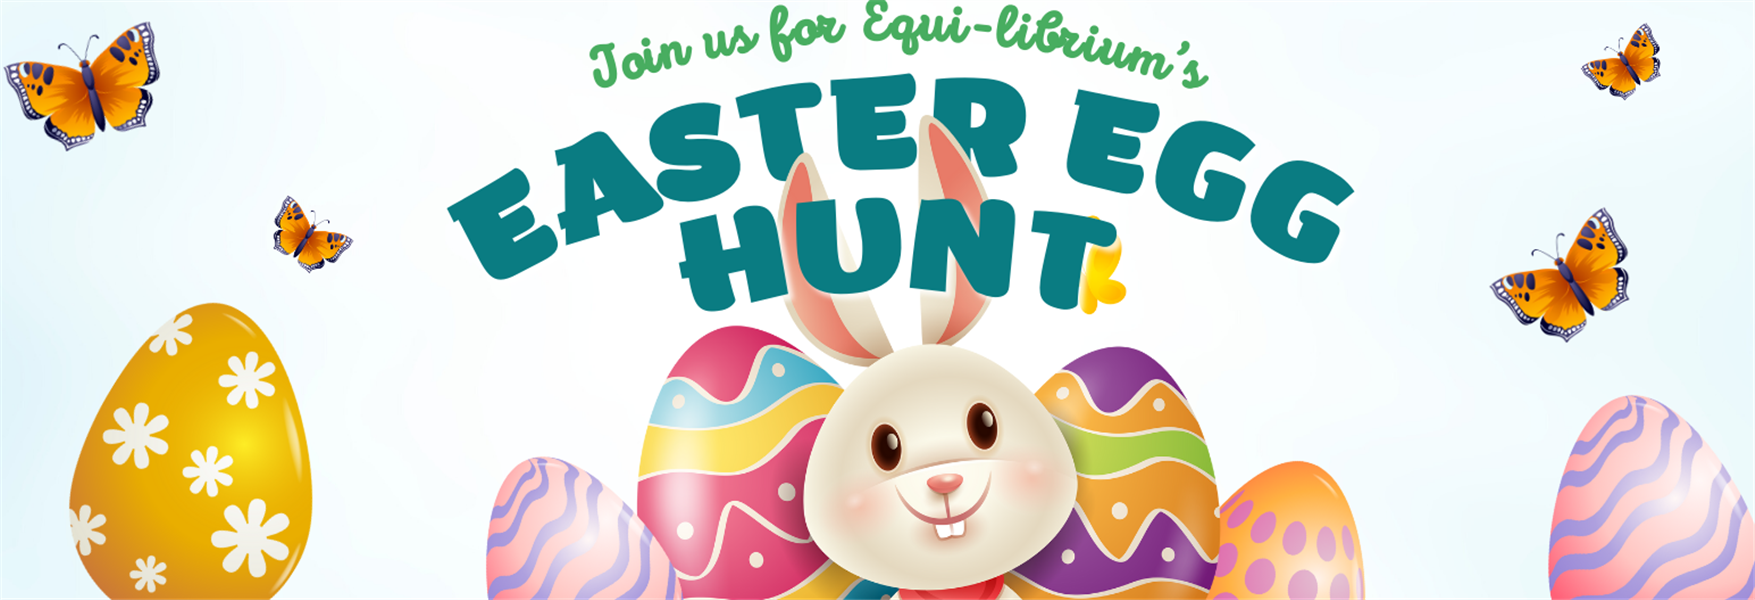 dc81d889-d53a-4fa9-994a-ec16c55b2d45_Colorful And Playful Kids Easter Egg Hunt Event Flyer (1).png